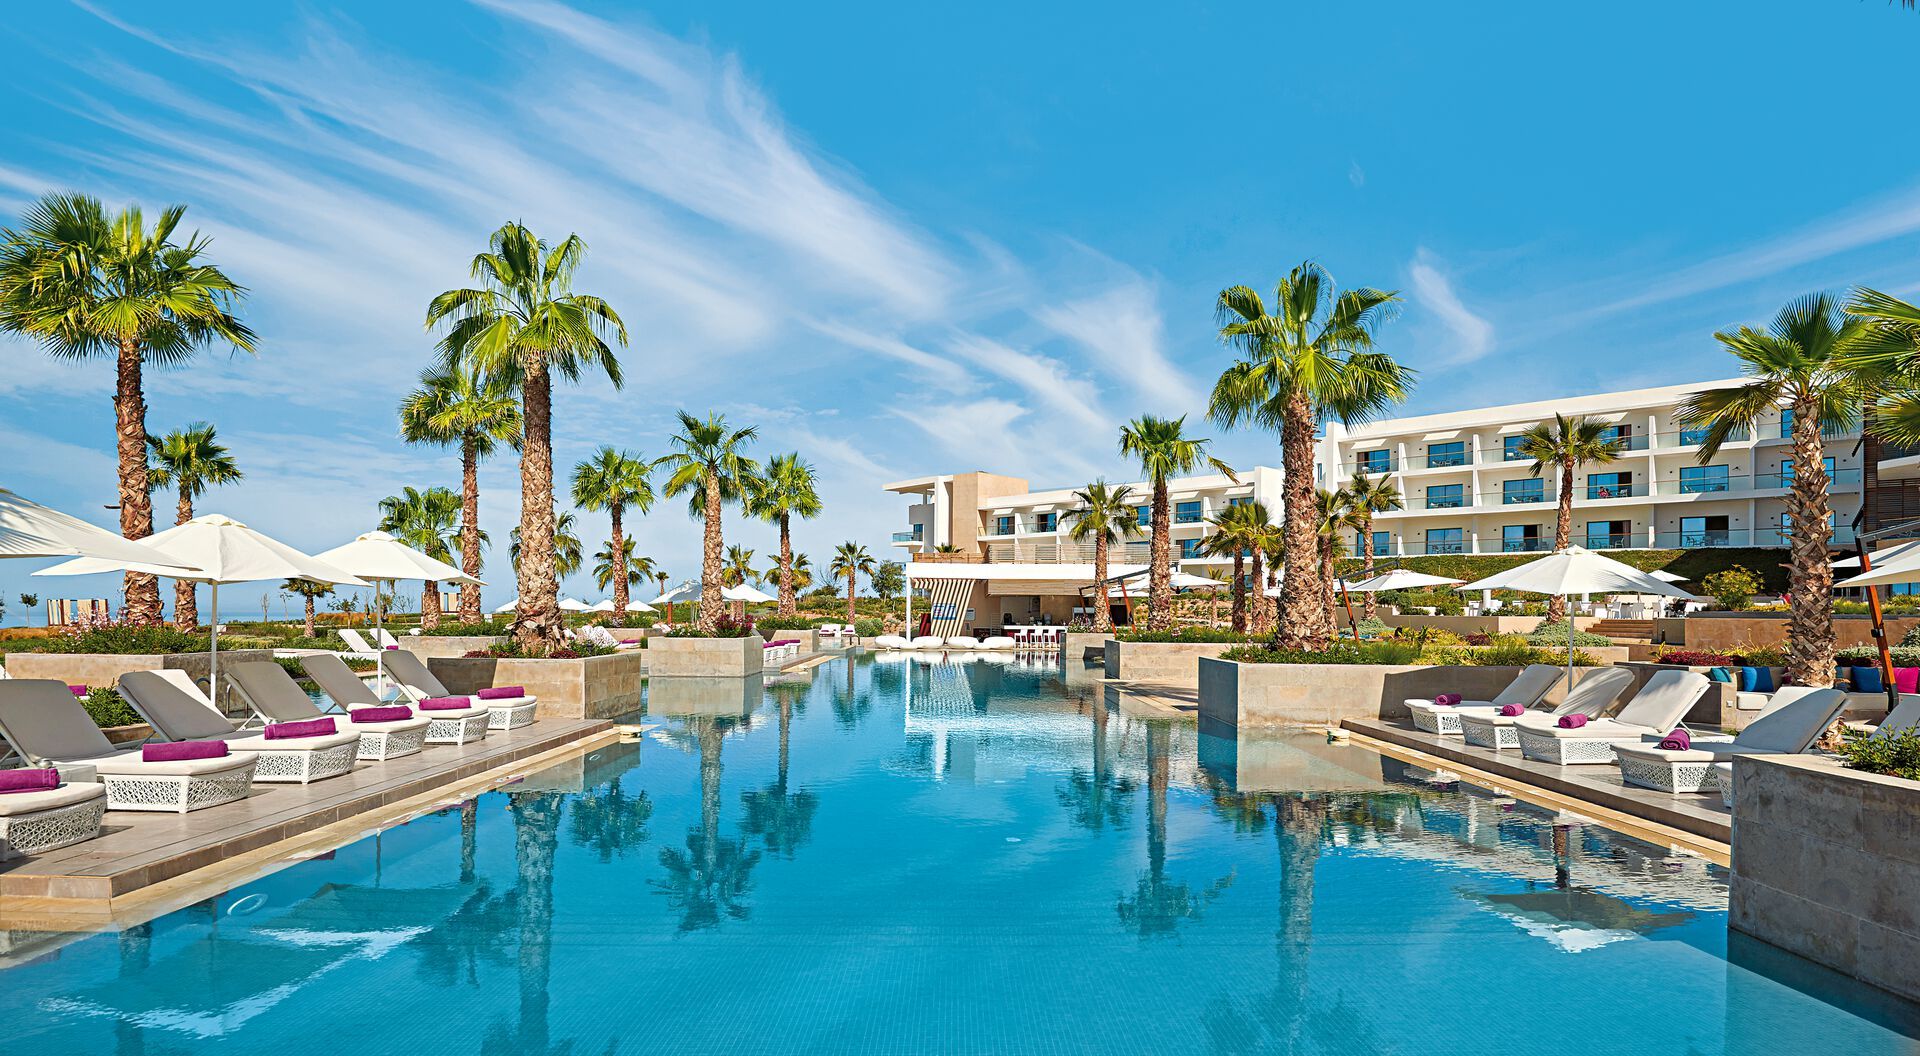 Maroc - Agadir - Hotel Hyatt Place Taghazout Bay 5*